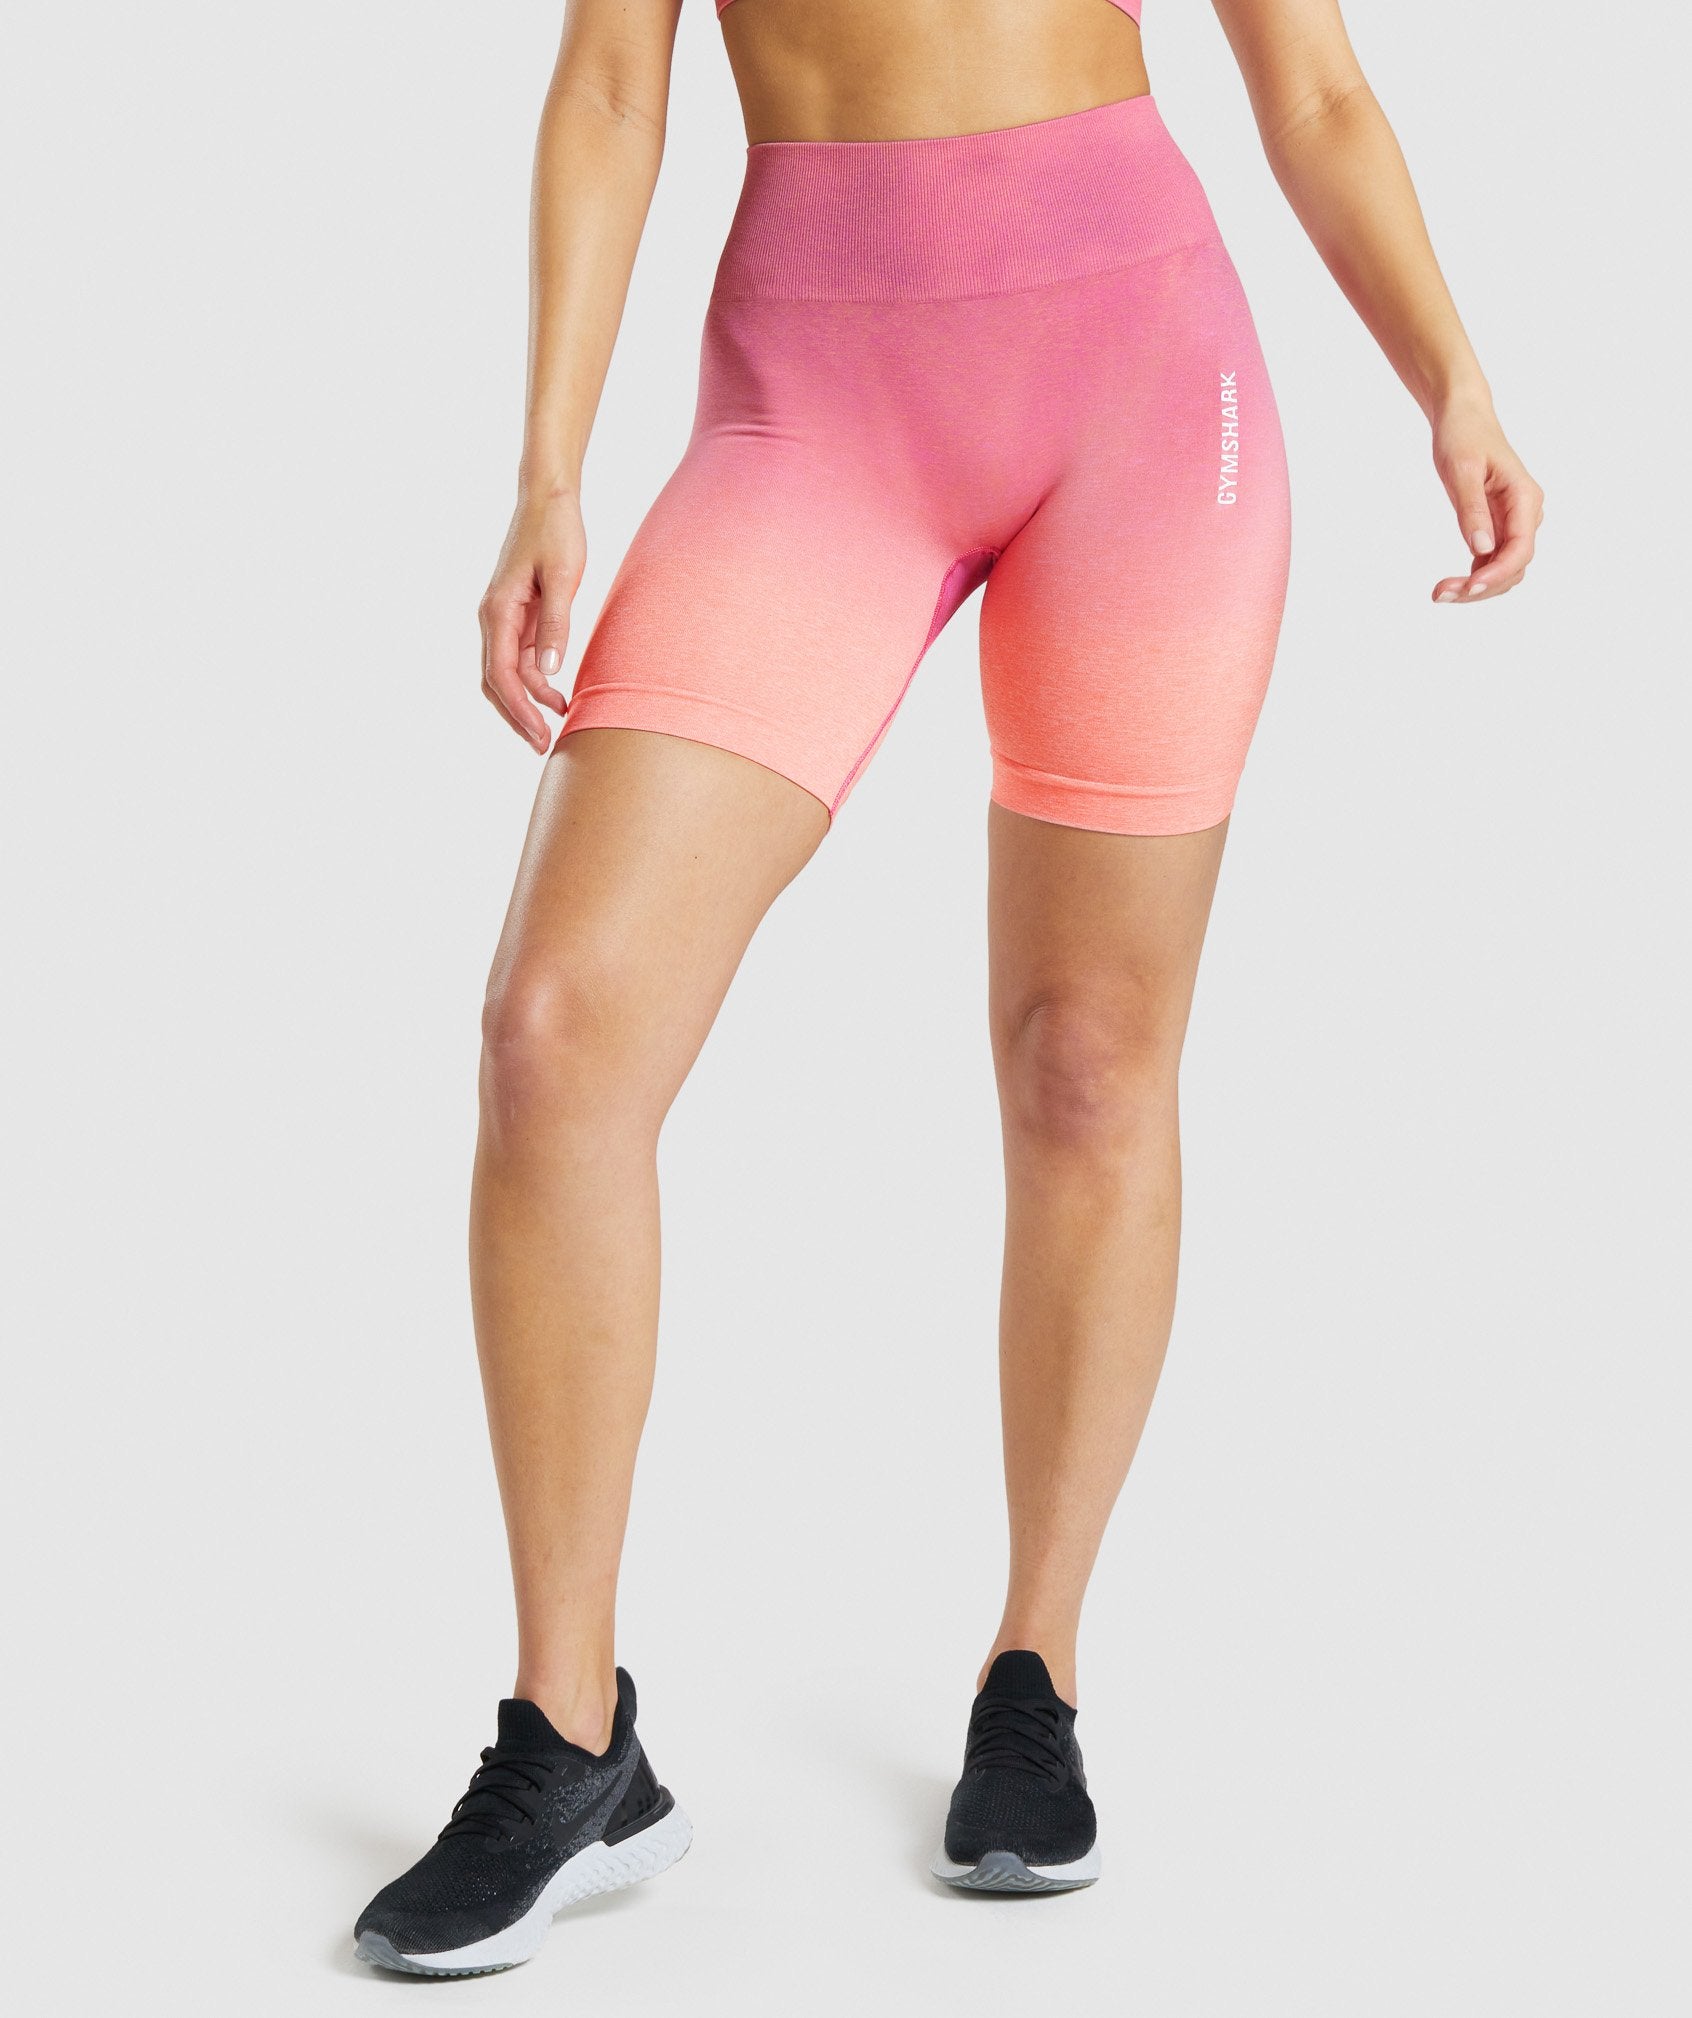 Gymshark Pink Shorts - Gem